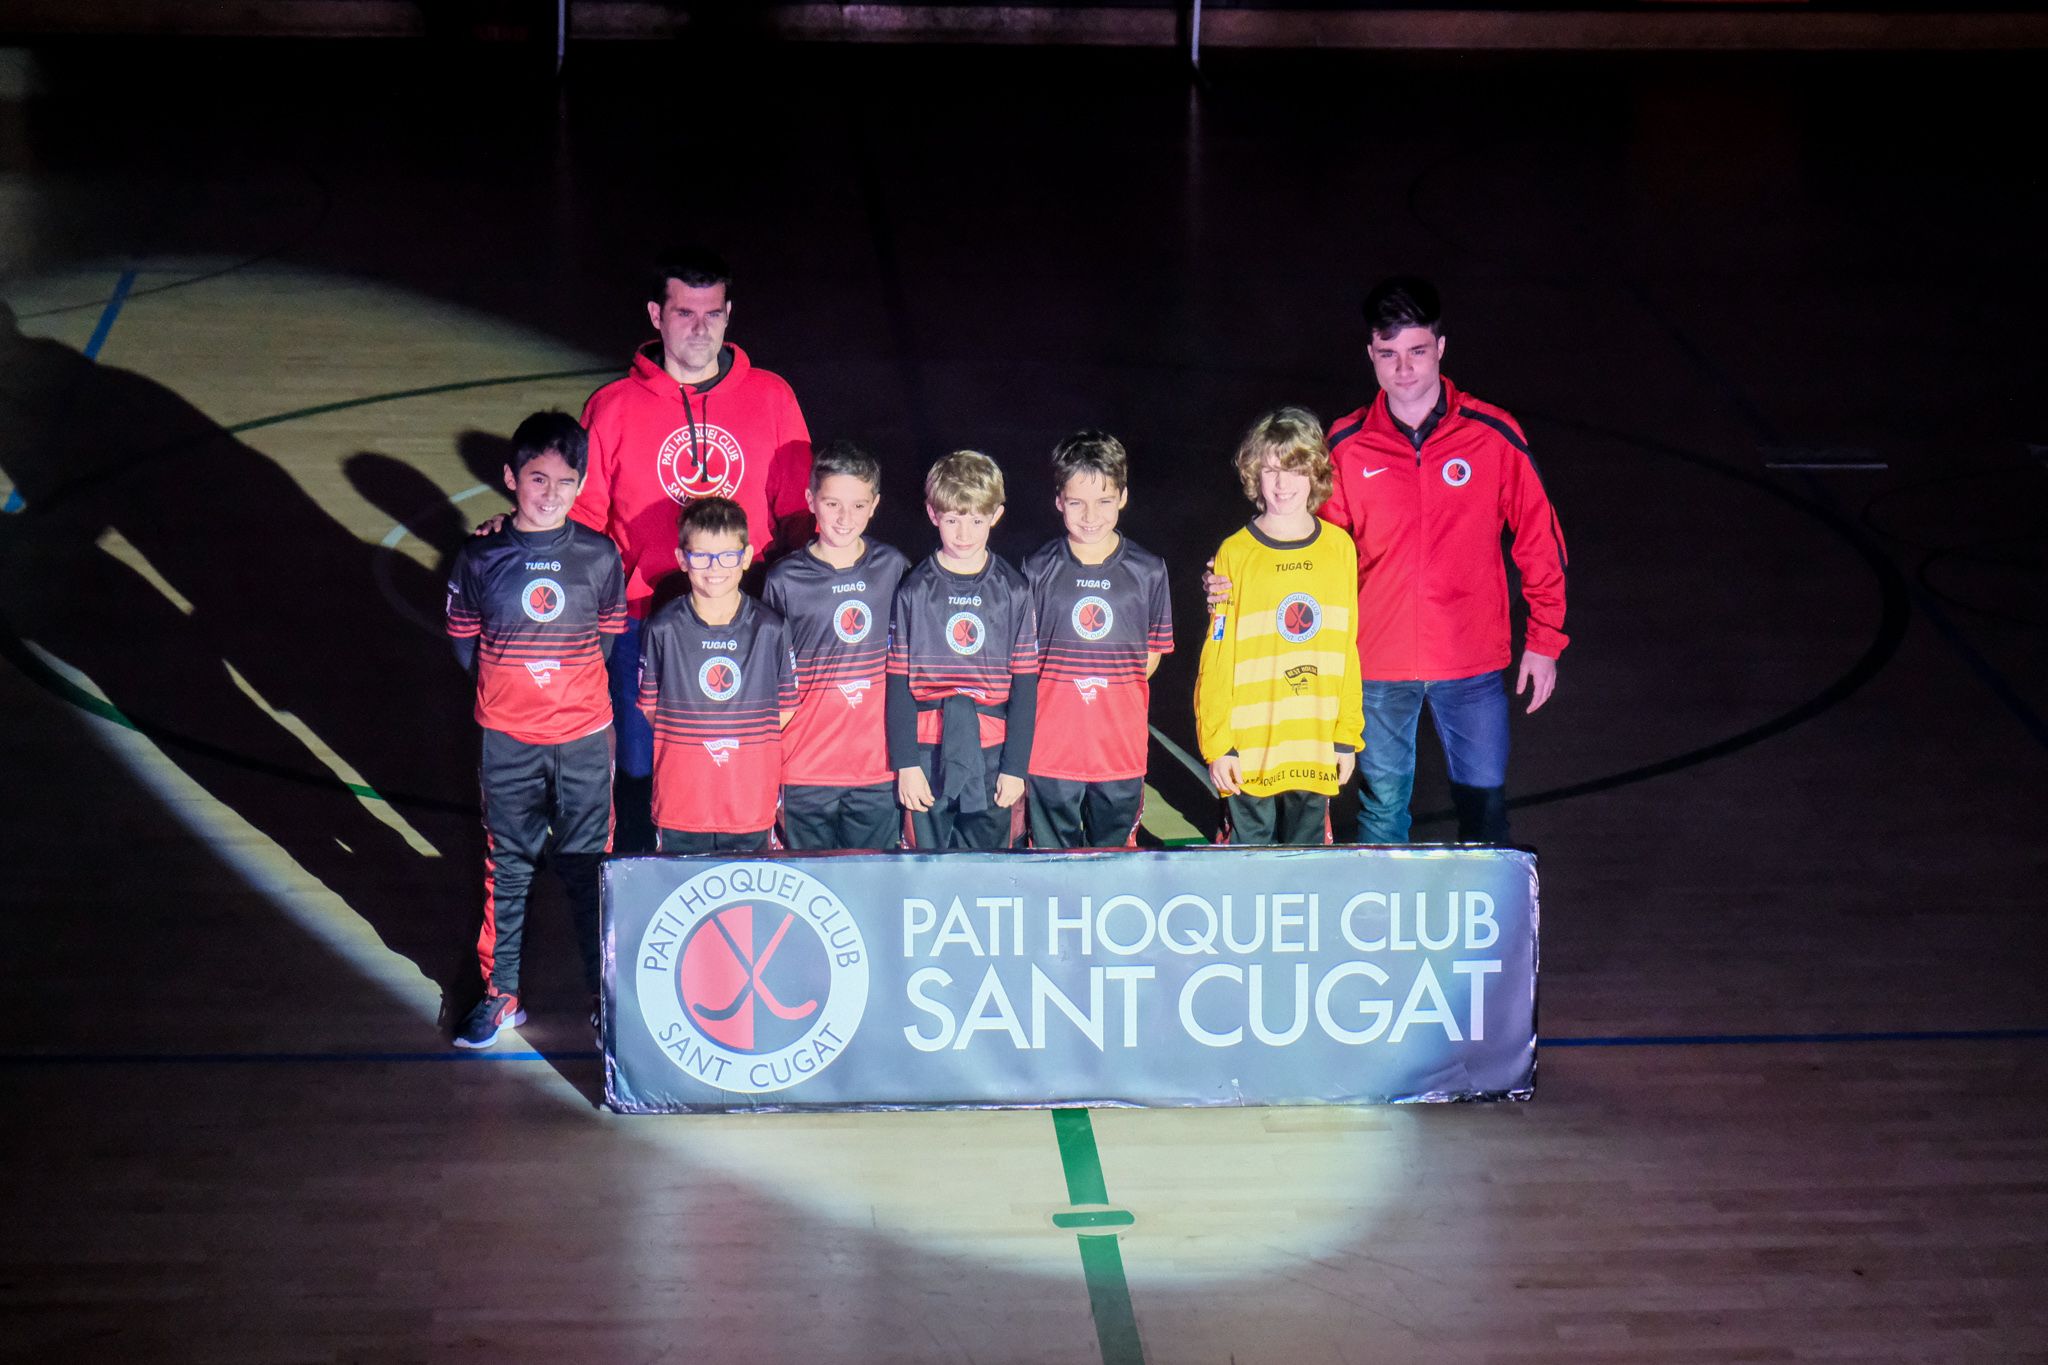 Presentació dels equips del Patí Hoquei Club Sant Cugat. FOTO: Ale Gómez